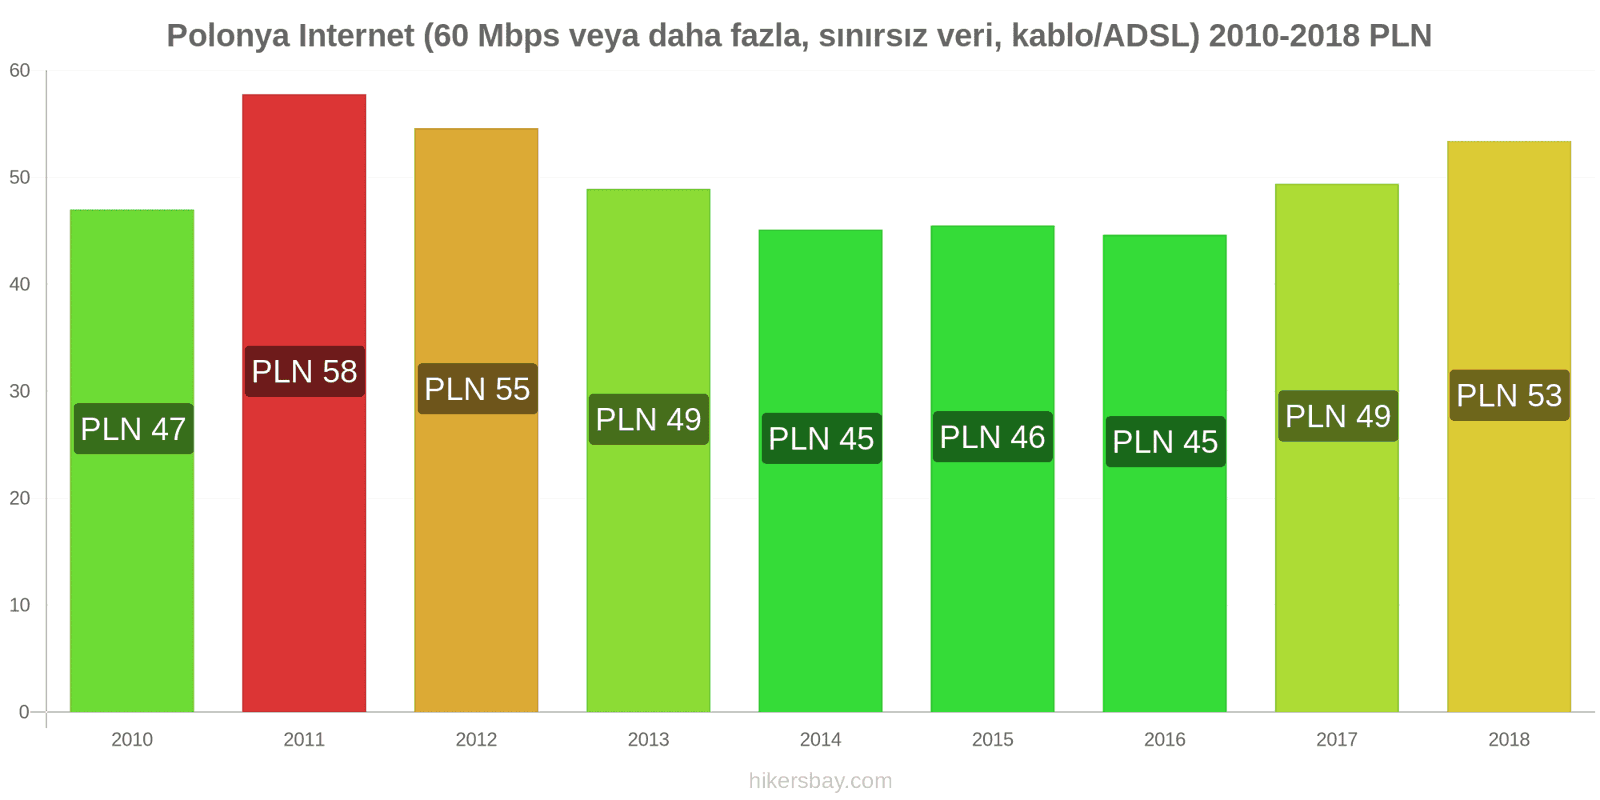 Polonya fiyat değişiklikleri İnternet (60 Mbps veya daha fazla, sınırsız veri, kablo/ADSL) hikersbay.com